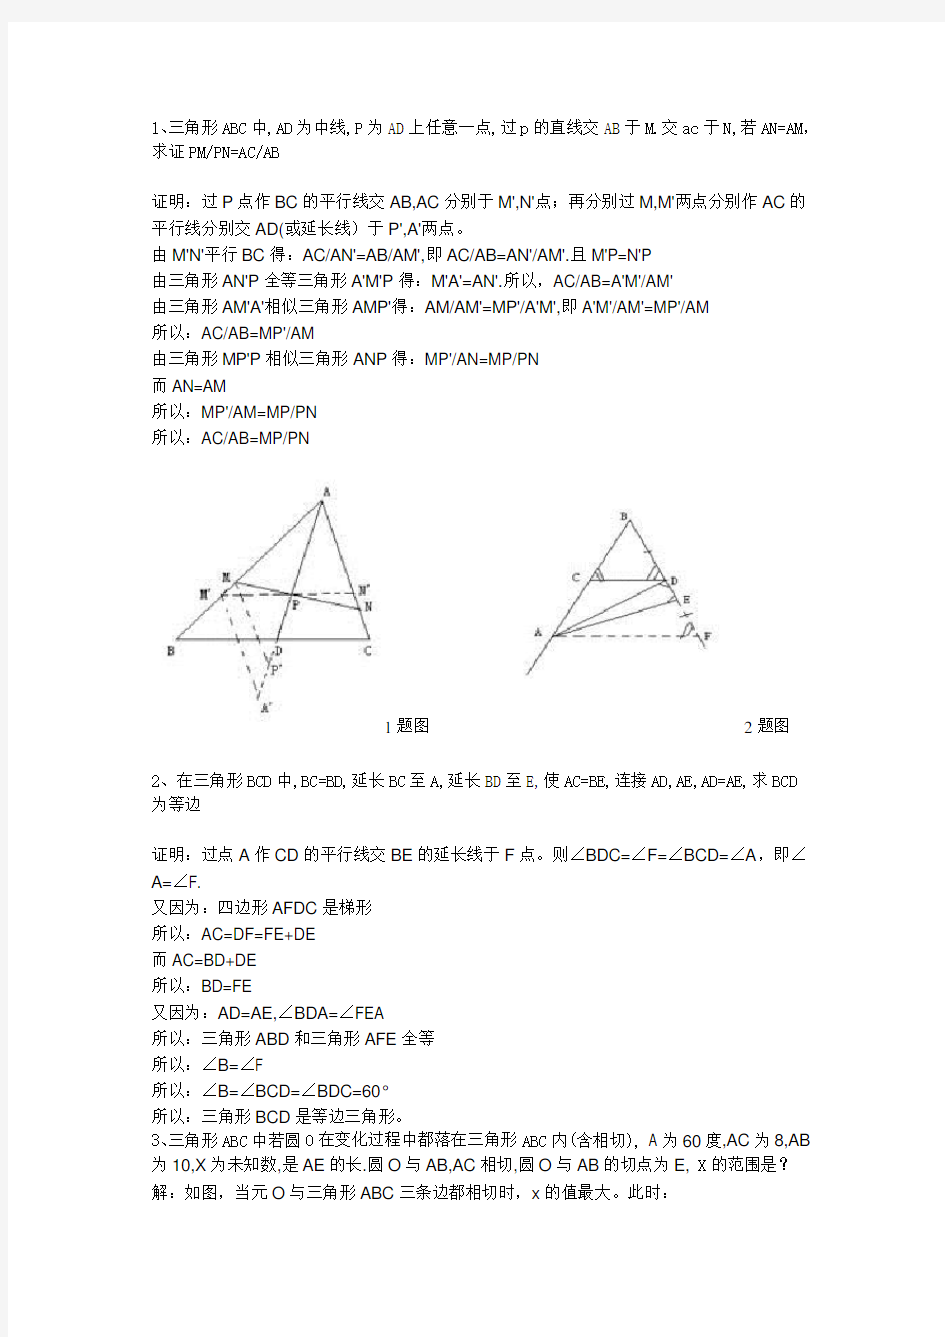 初中数学平面几何题20道,学习辅助线的添加。